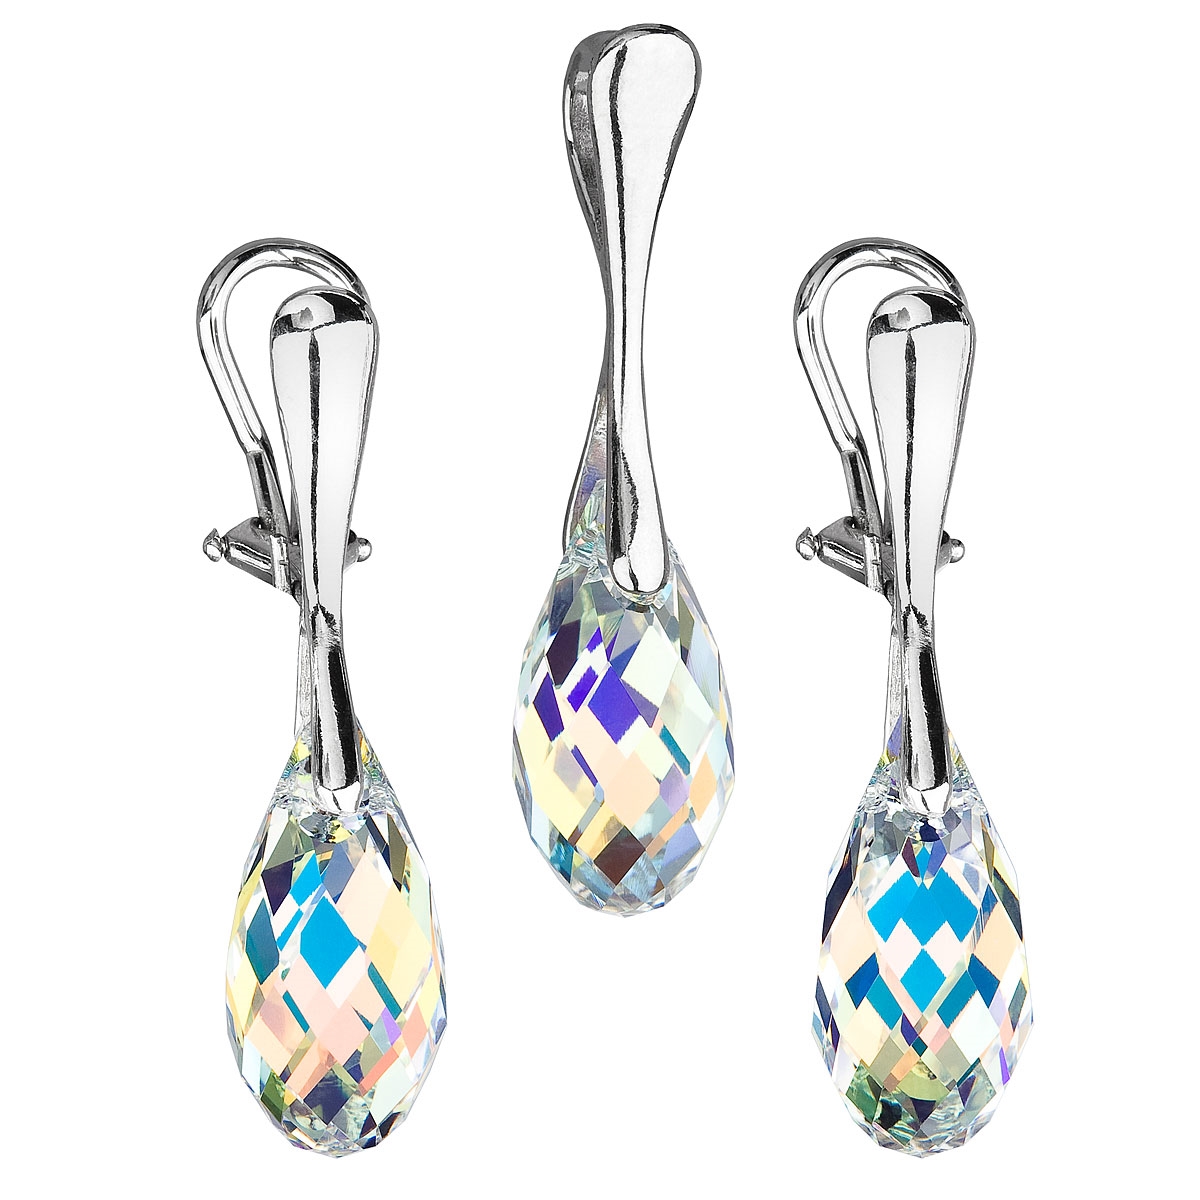 Sada šperkov sa slzičkami Crystals from Swarovski ® AB